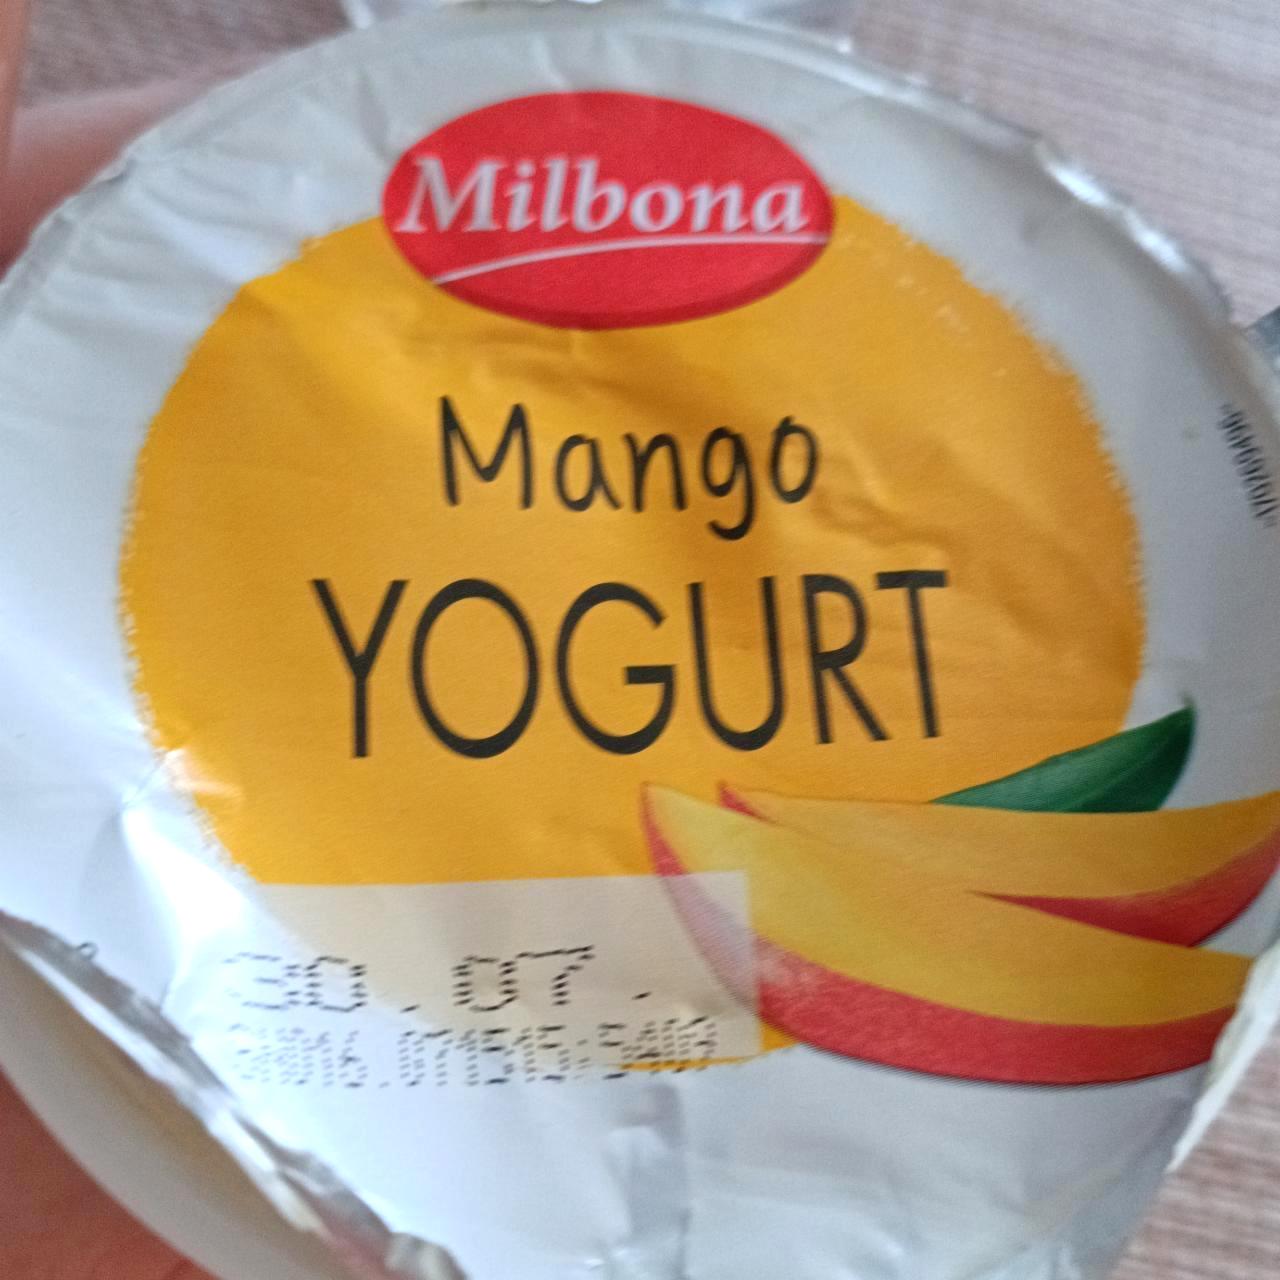 Képek - Mango yogurt Milbona